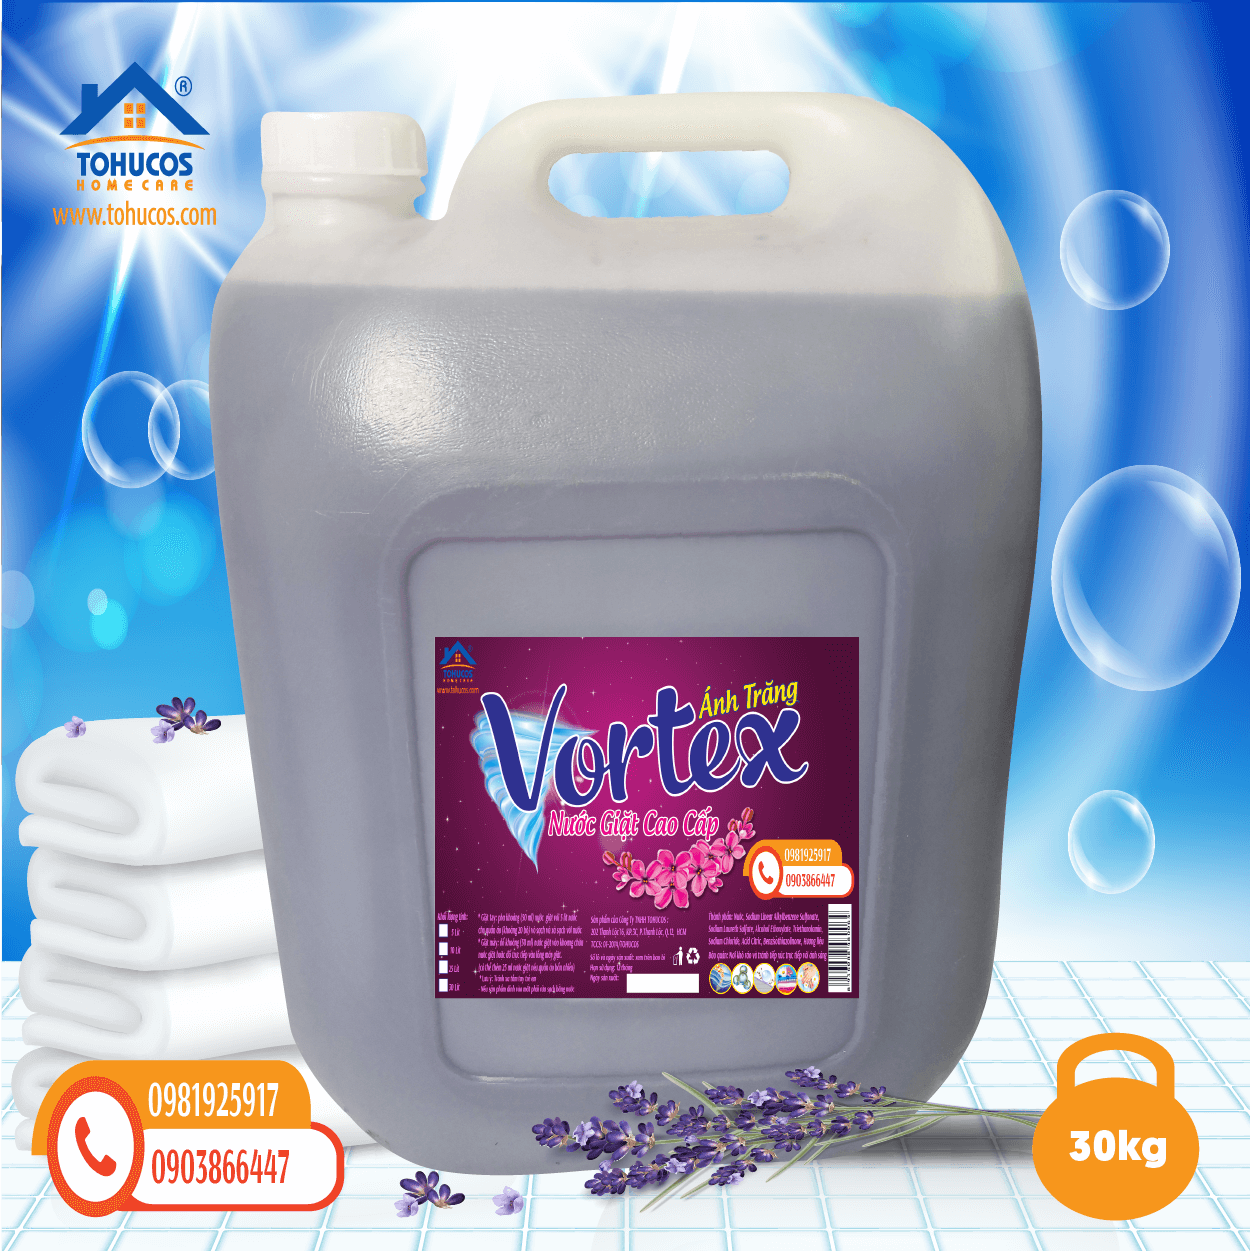 Nước Giặt Vortex -Hương Lavender (30 kg)